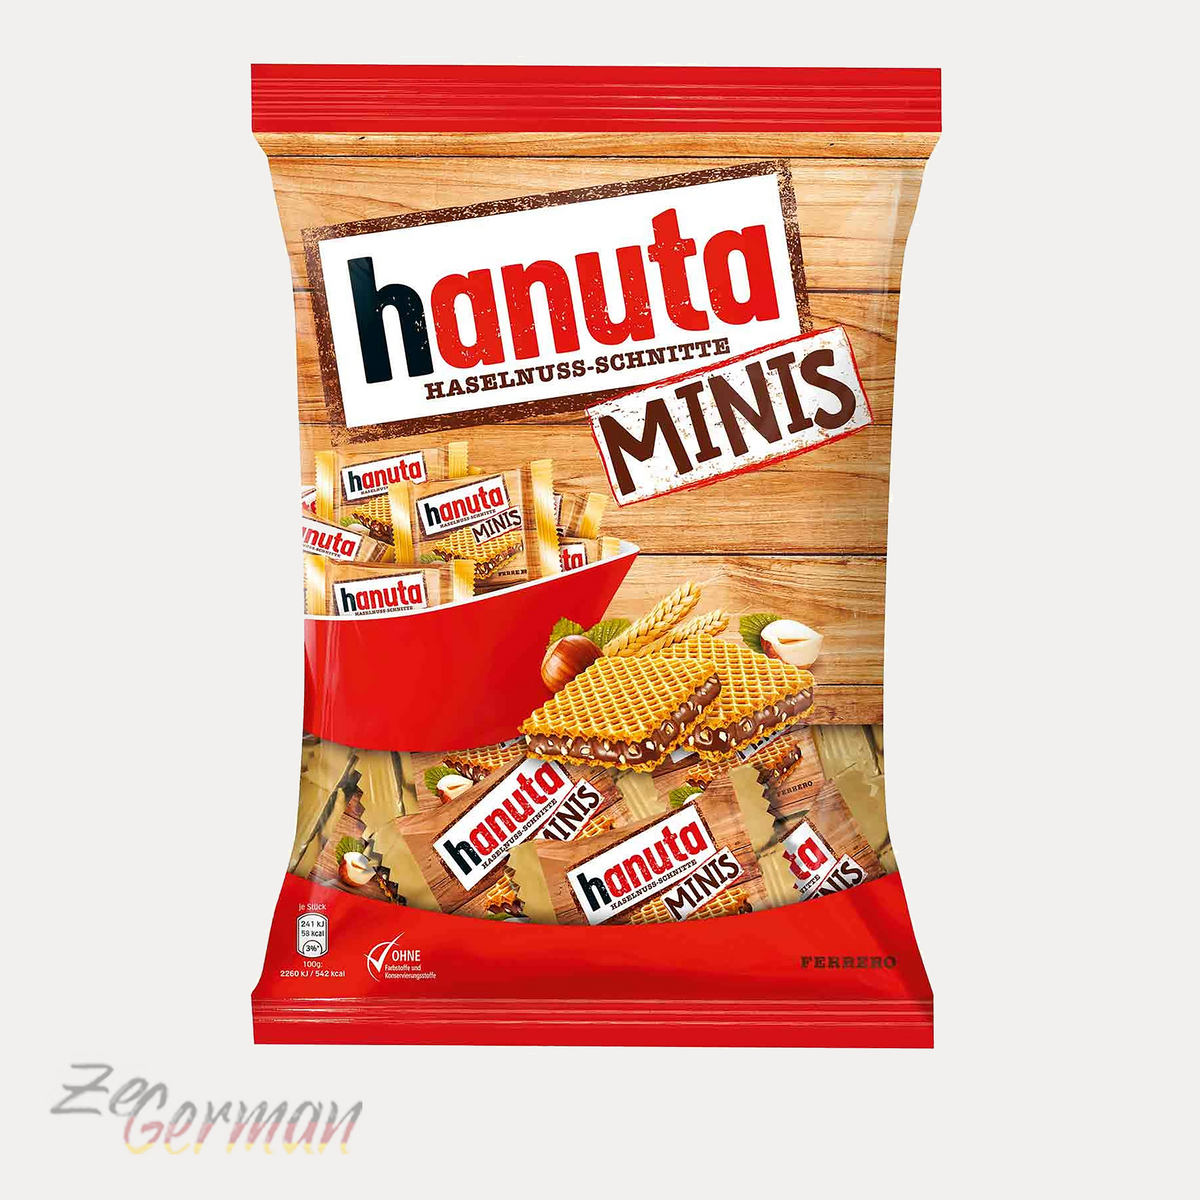 Hanuta Hazelnut Bites Minis, 200 g